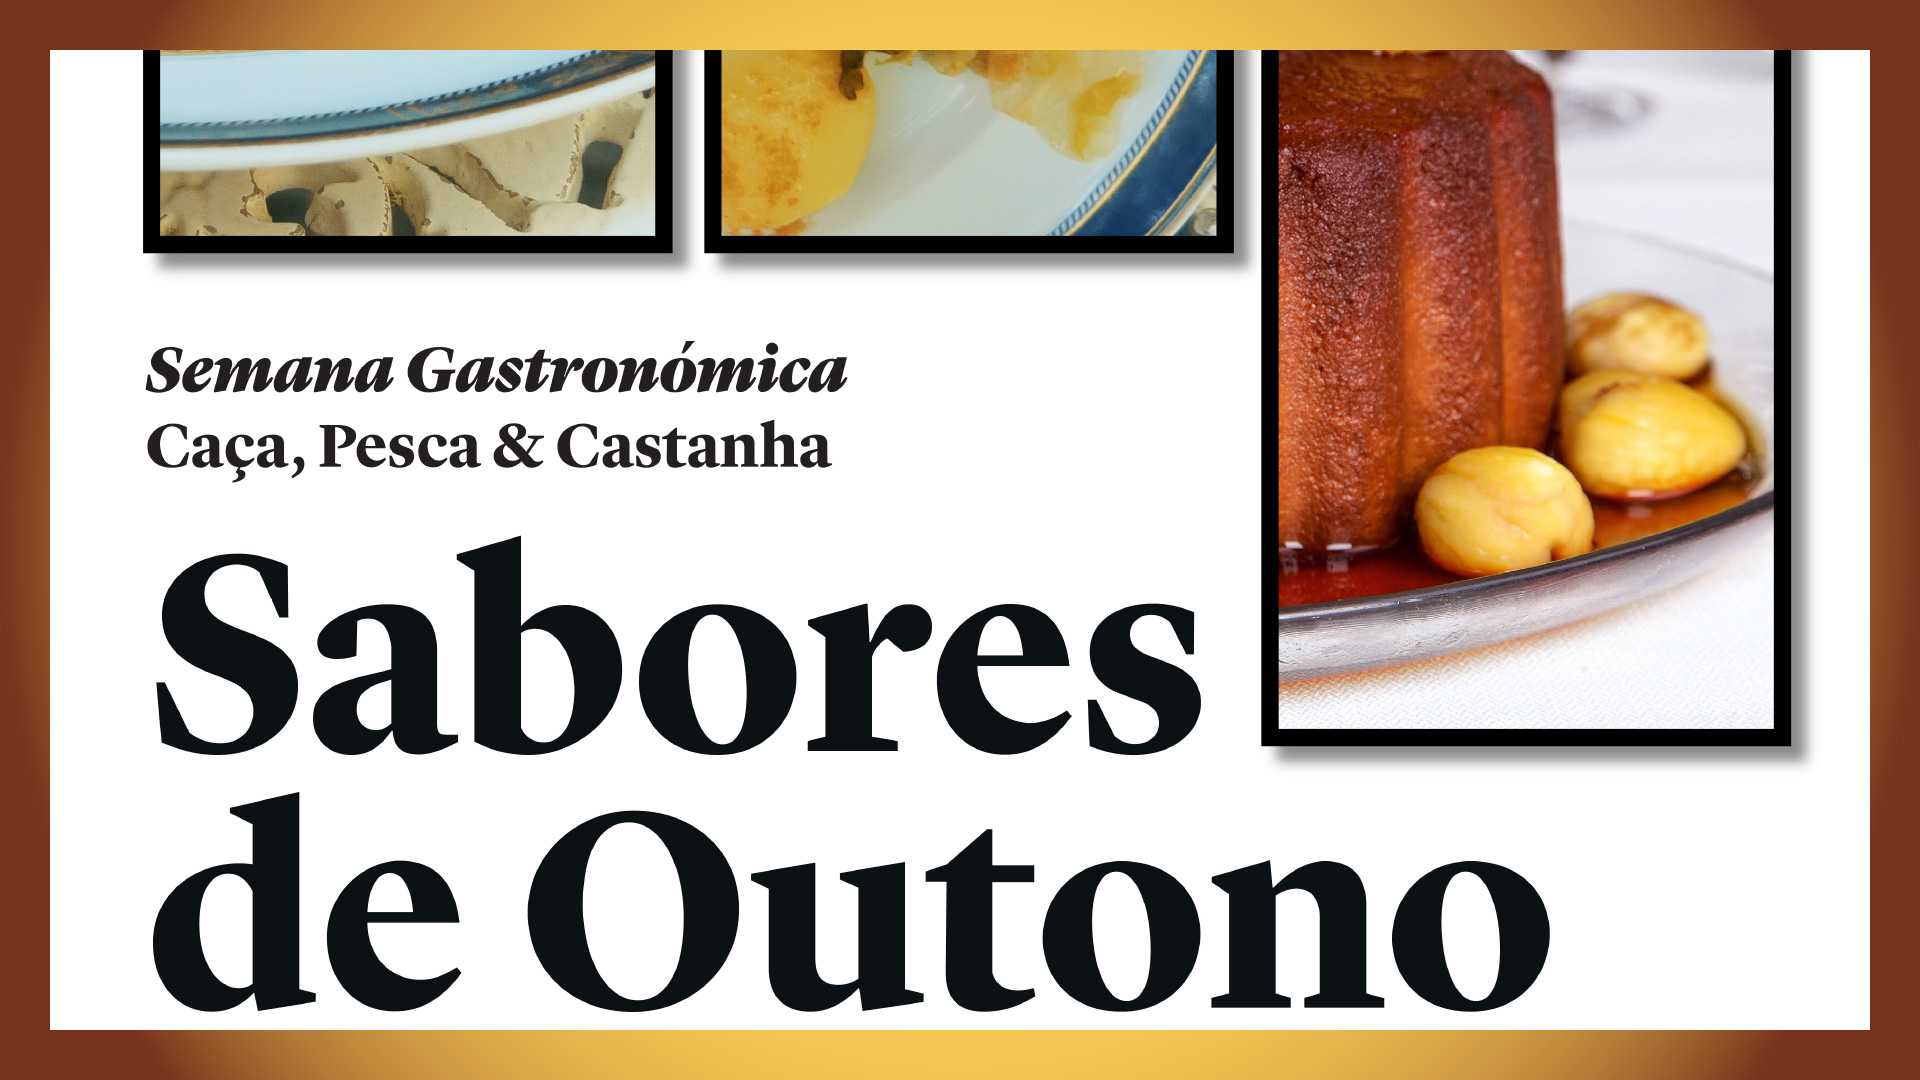 Semana Gastronómica da Caça, Pesca & Castanha, de 29 de outubro a 7 de novembro